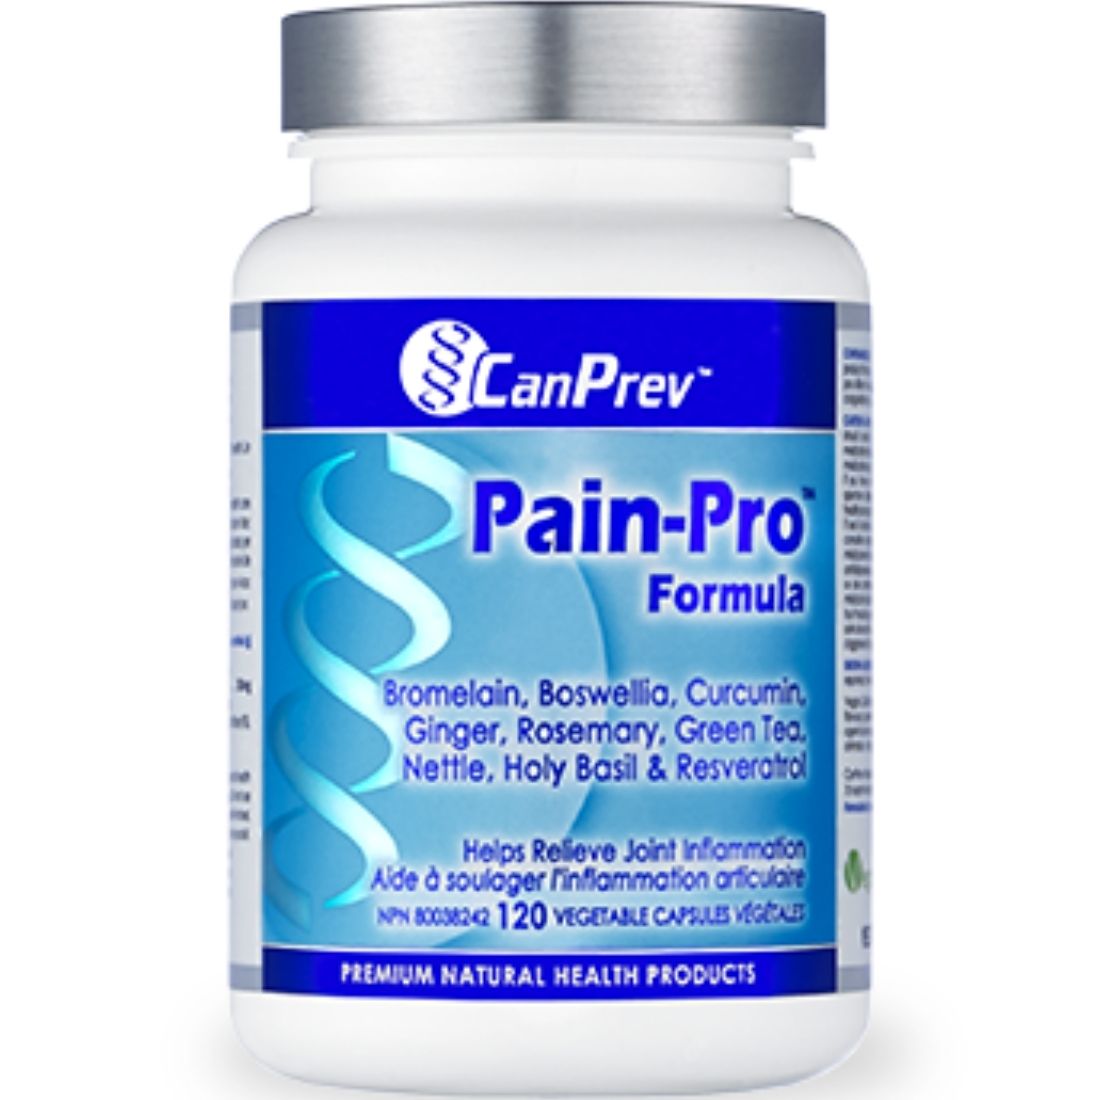 CanPrev Pain-Pro Formula, 120 Vegicaps